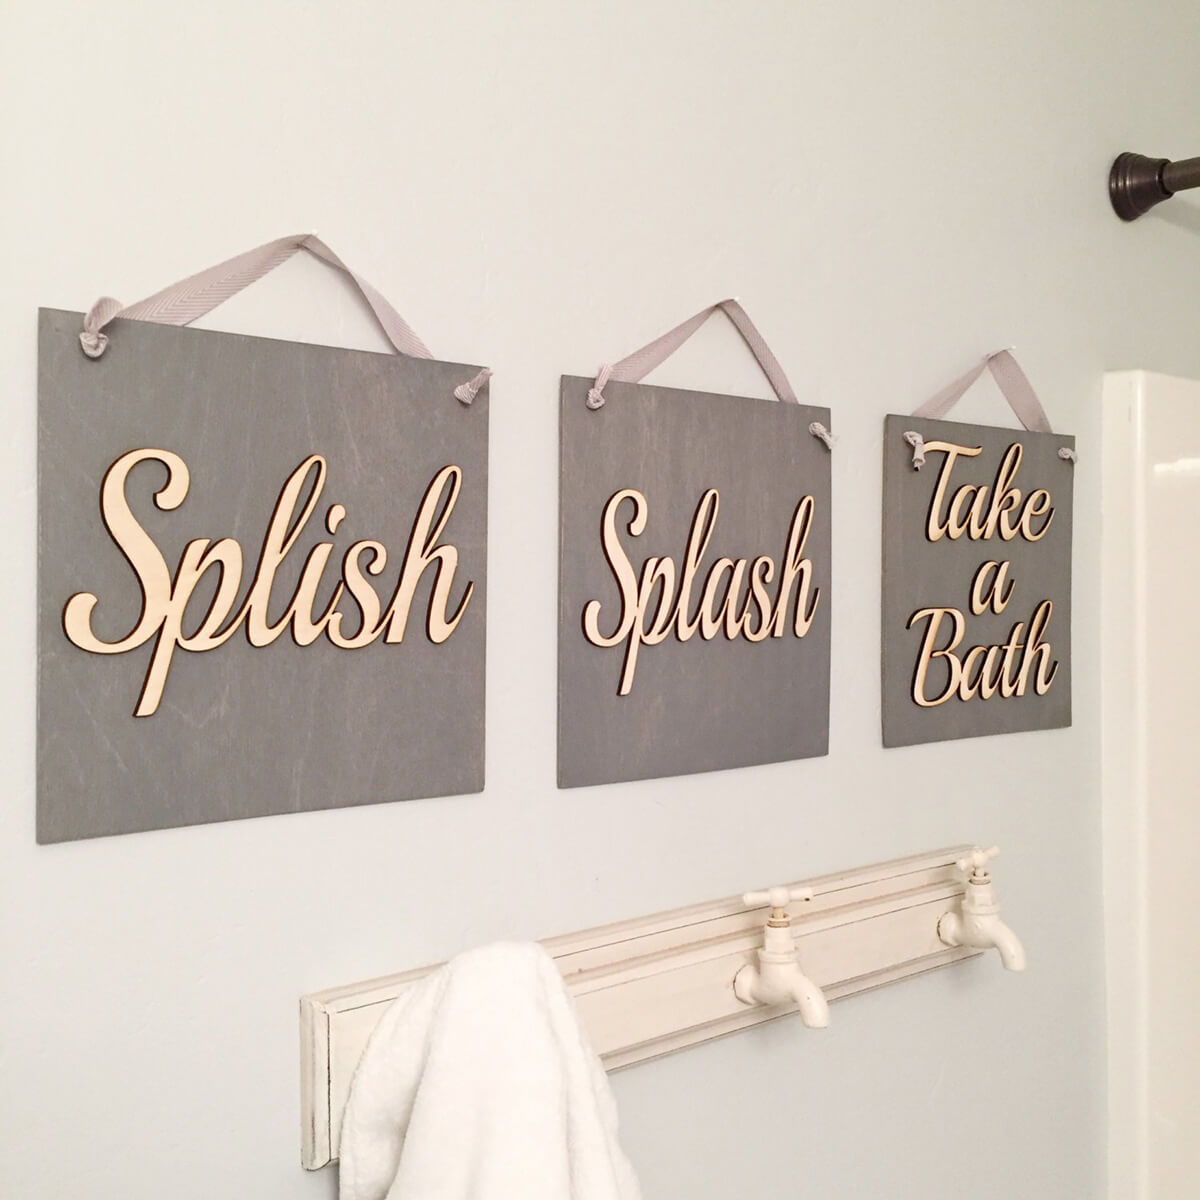 Splish Splash Take a Bath Sign Set